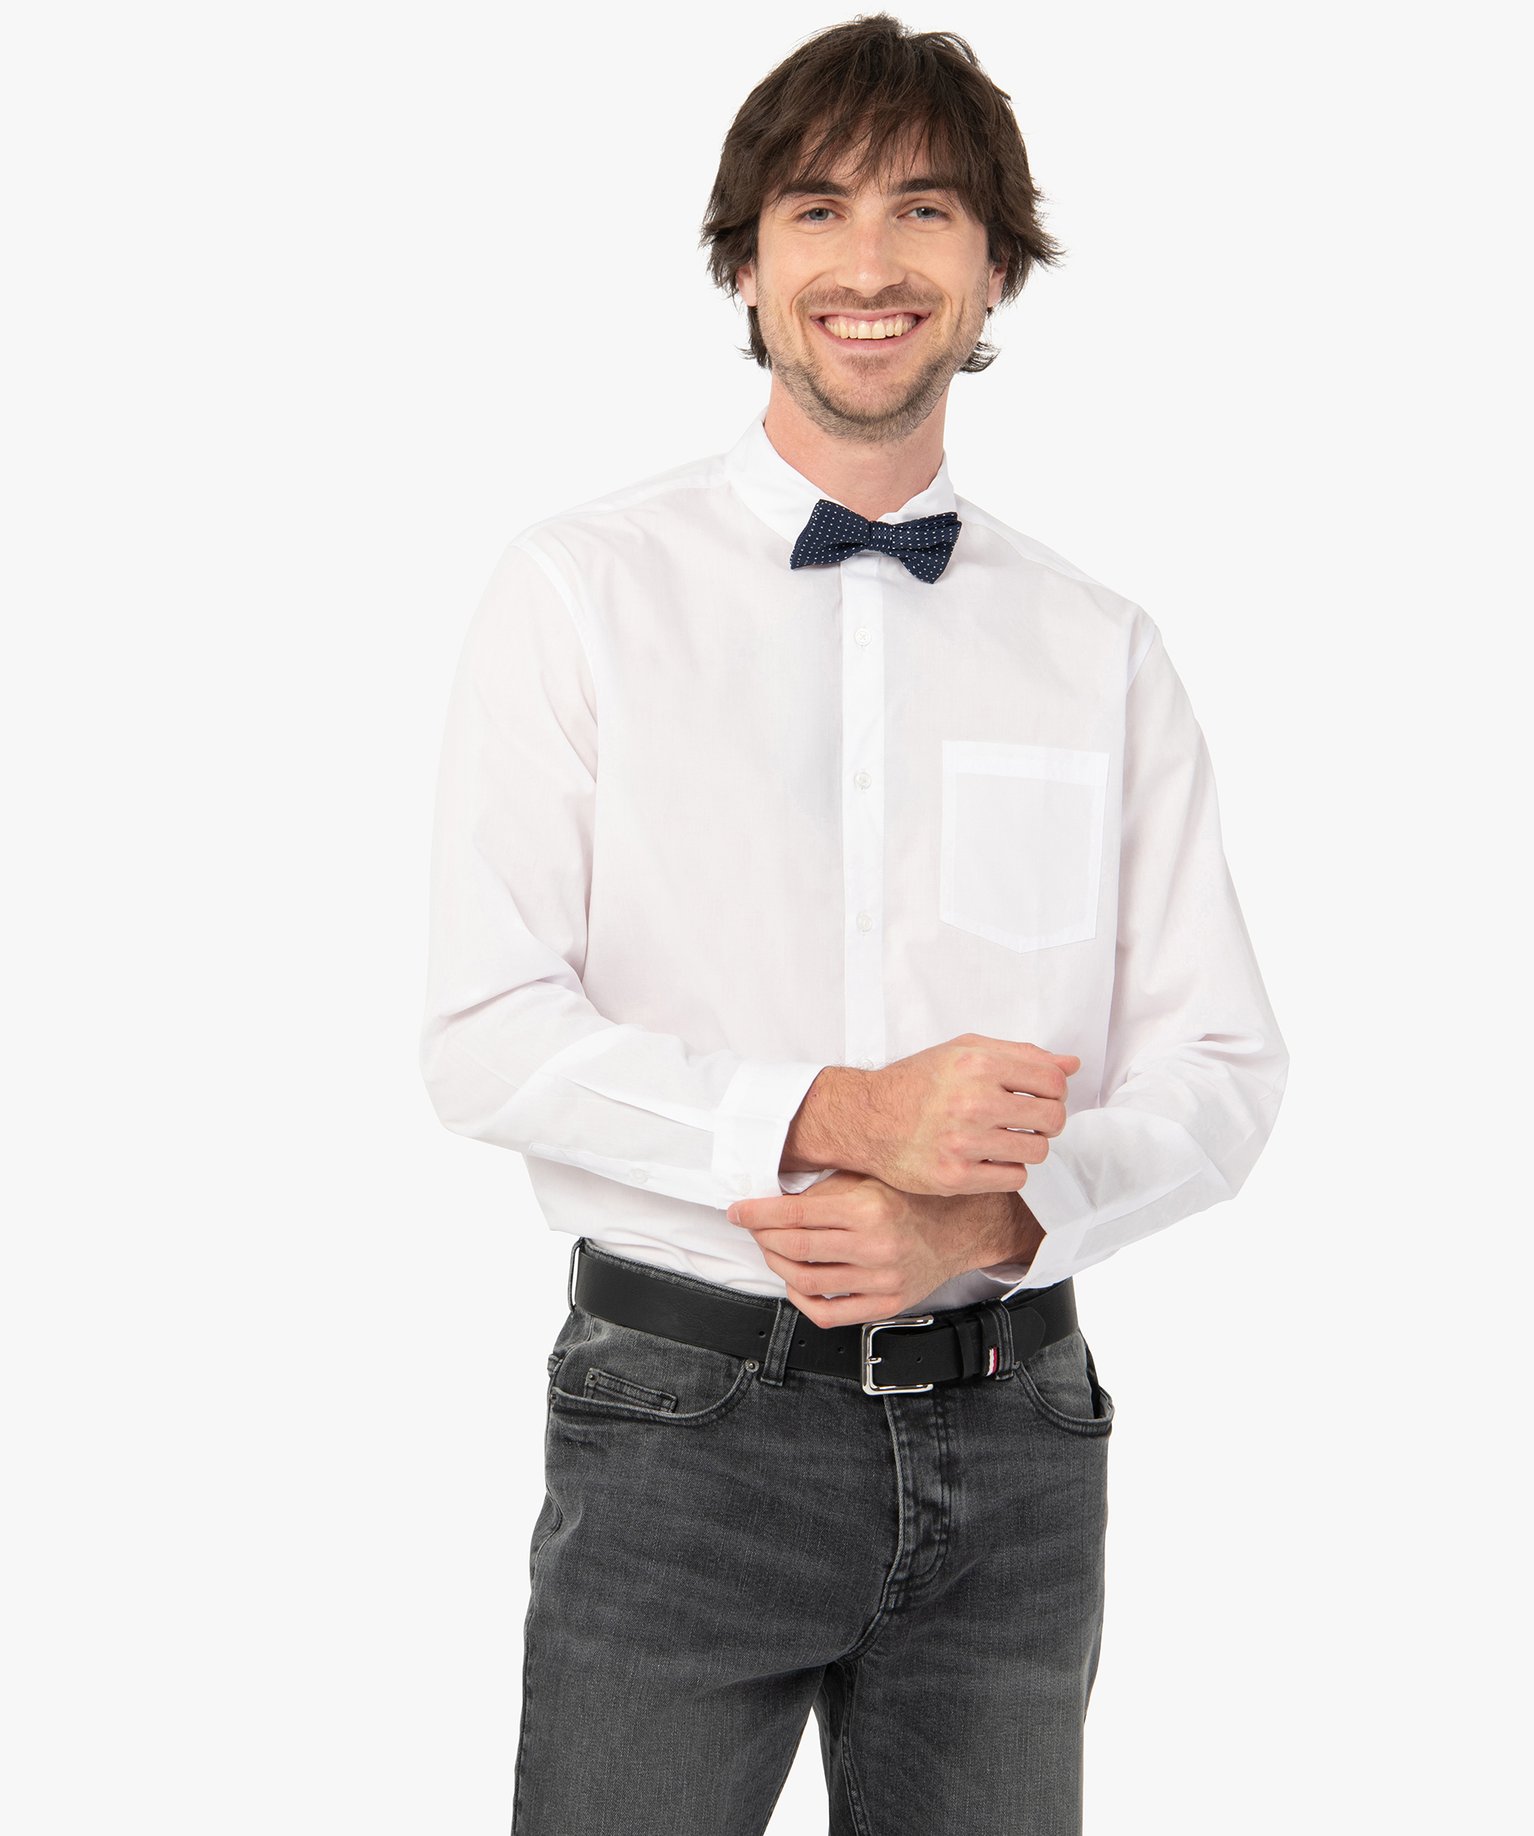 chemise homme uni a manches longues repassage facile blanc chemise manches longues